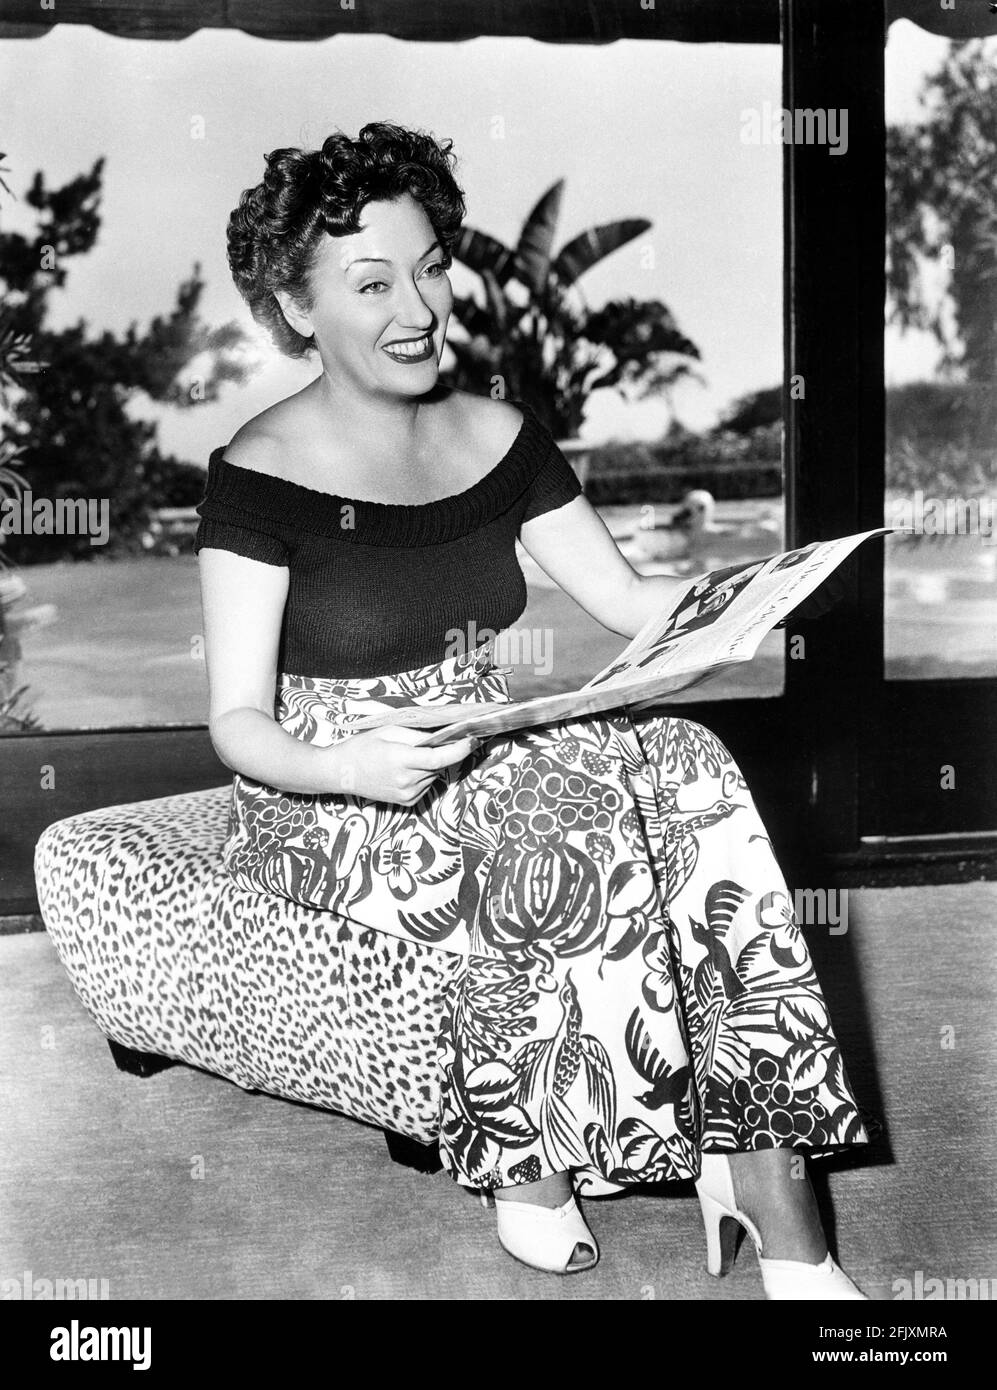 1951 , USA : l'attrice GLORIA SWANSON ( 1898 - 1983 ) al momento del suo film SUNSET BOULEVARD ( Viale del Tramonto ) di Billy Wilder , Paramount publicity Still - FILM - CINEMA - attrice cinematografia - VAMP - DIVA - DIVINA - DIVINA - DIVINA - spalla - spalle - spalle - riccioli - ricci - neo - mole - sandali - sandali - sorriso - sorriso --- Archivio GBB Foto Stock